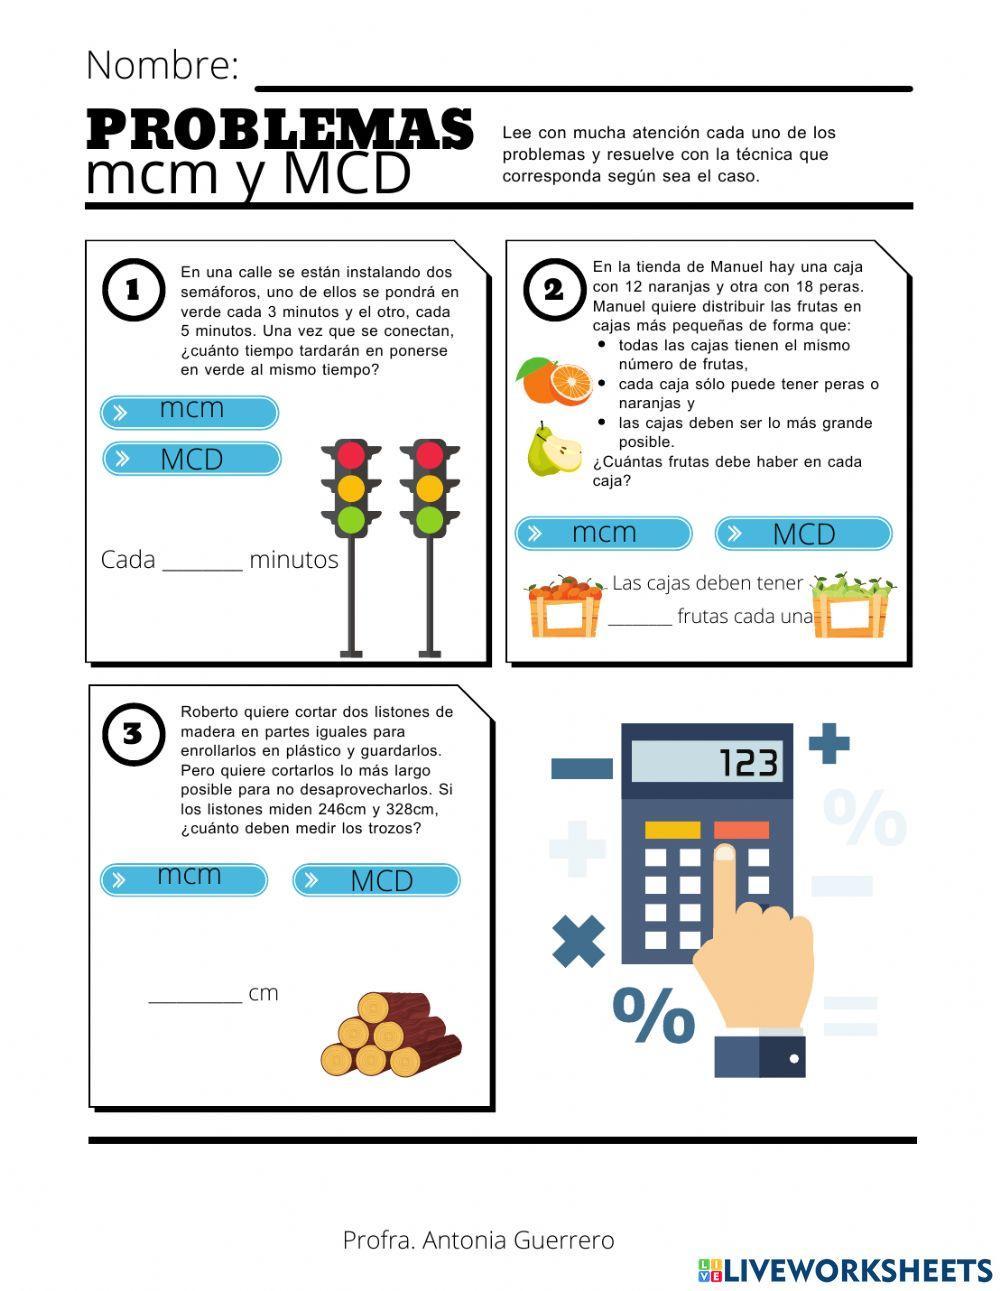 Problemas con mcm y MCD